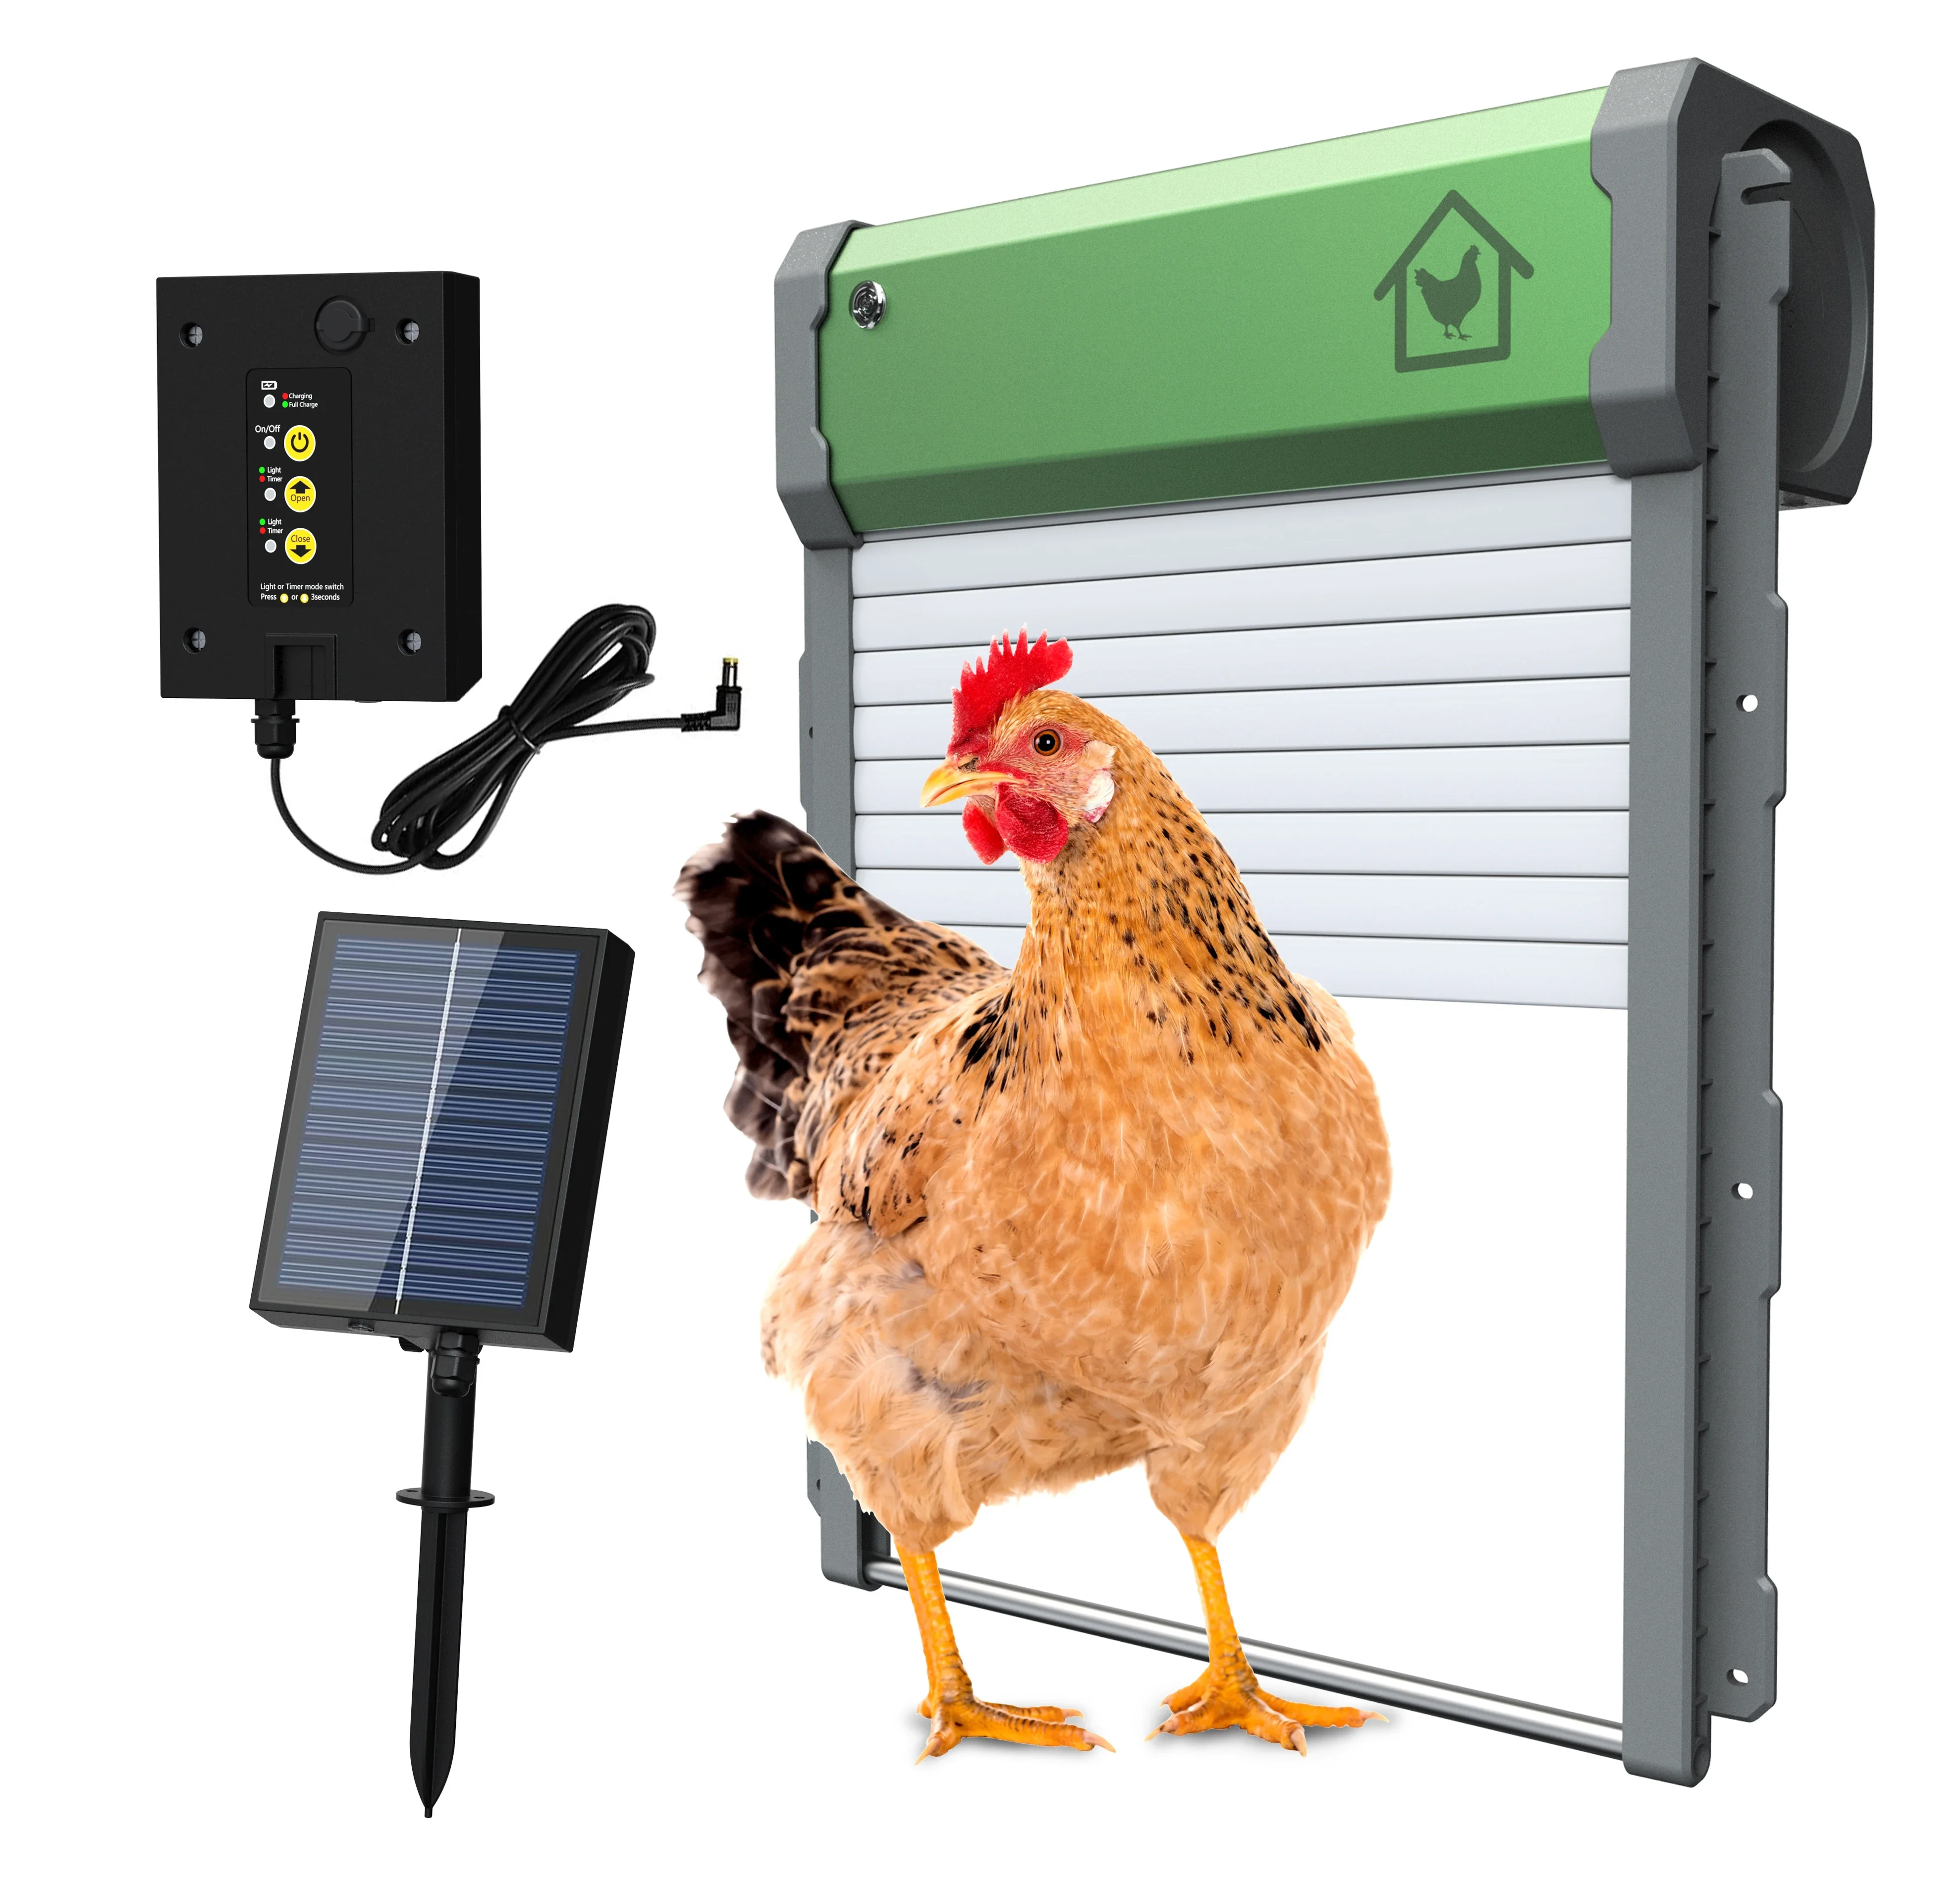 

Automatic chicken coop door light sensing chicken coop roller shutter electric door remote control manual timed opening closing